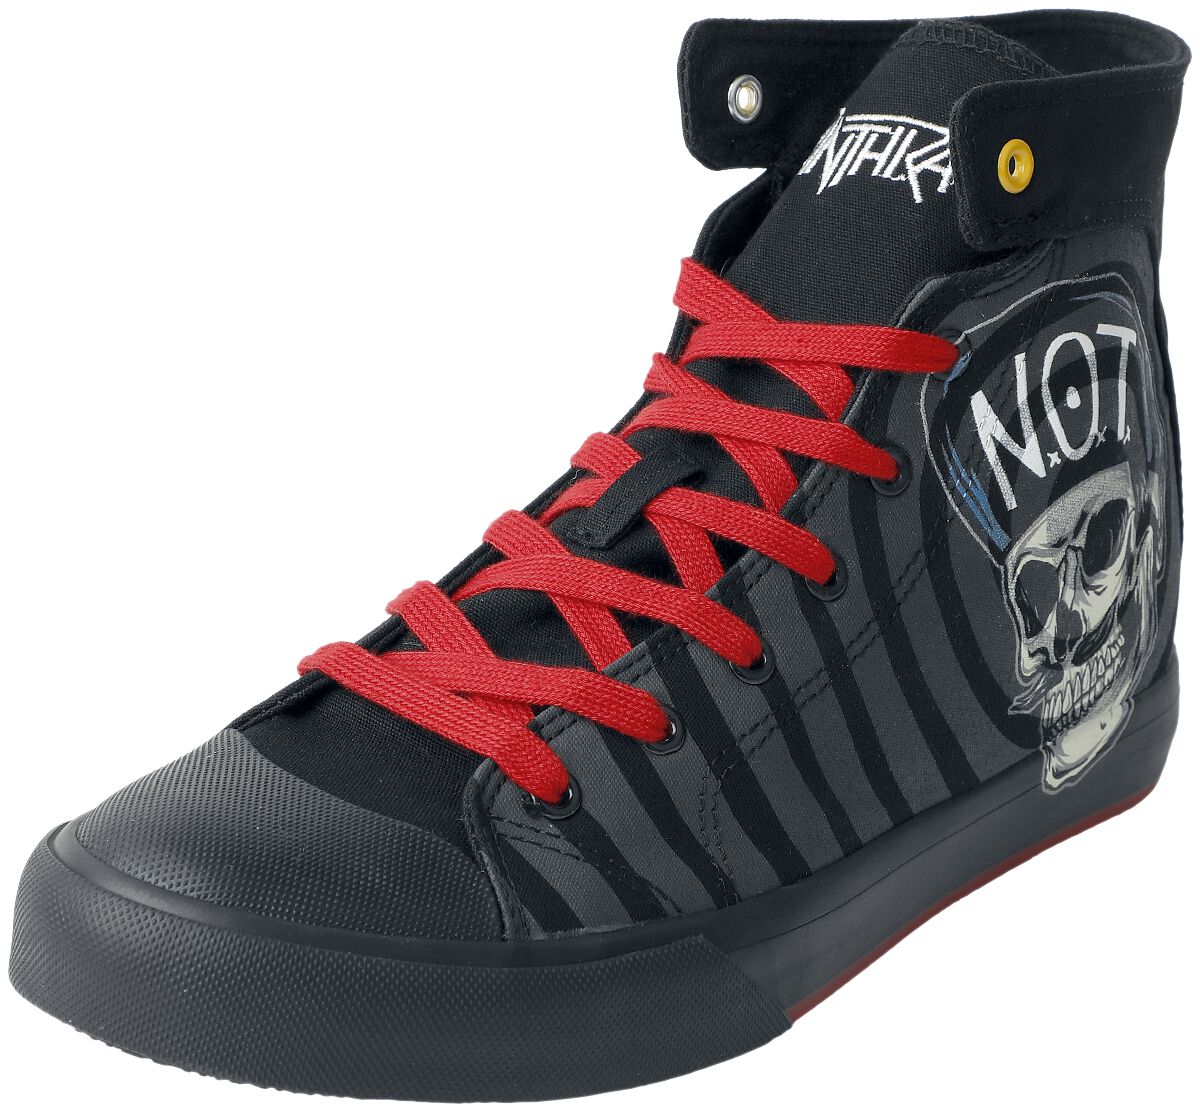 Anthrax Sneaker high - EMP Signature Collection - EU37 bis EU39 - Größe EU39 - schwarz  - EMP exklusives Merchandise!